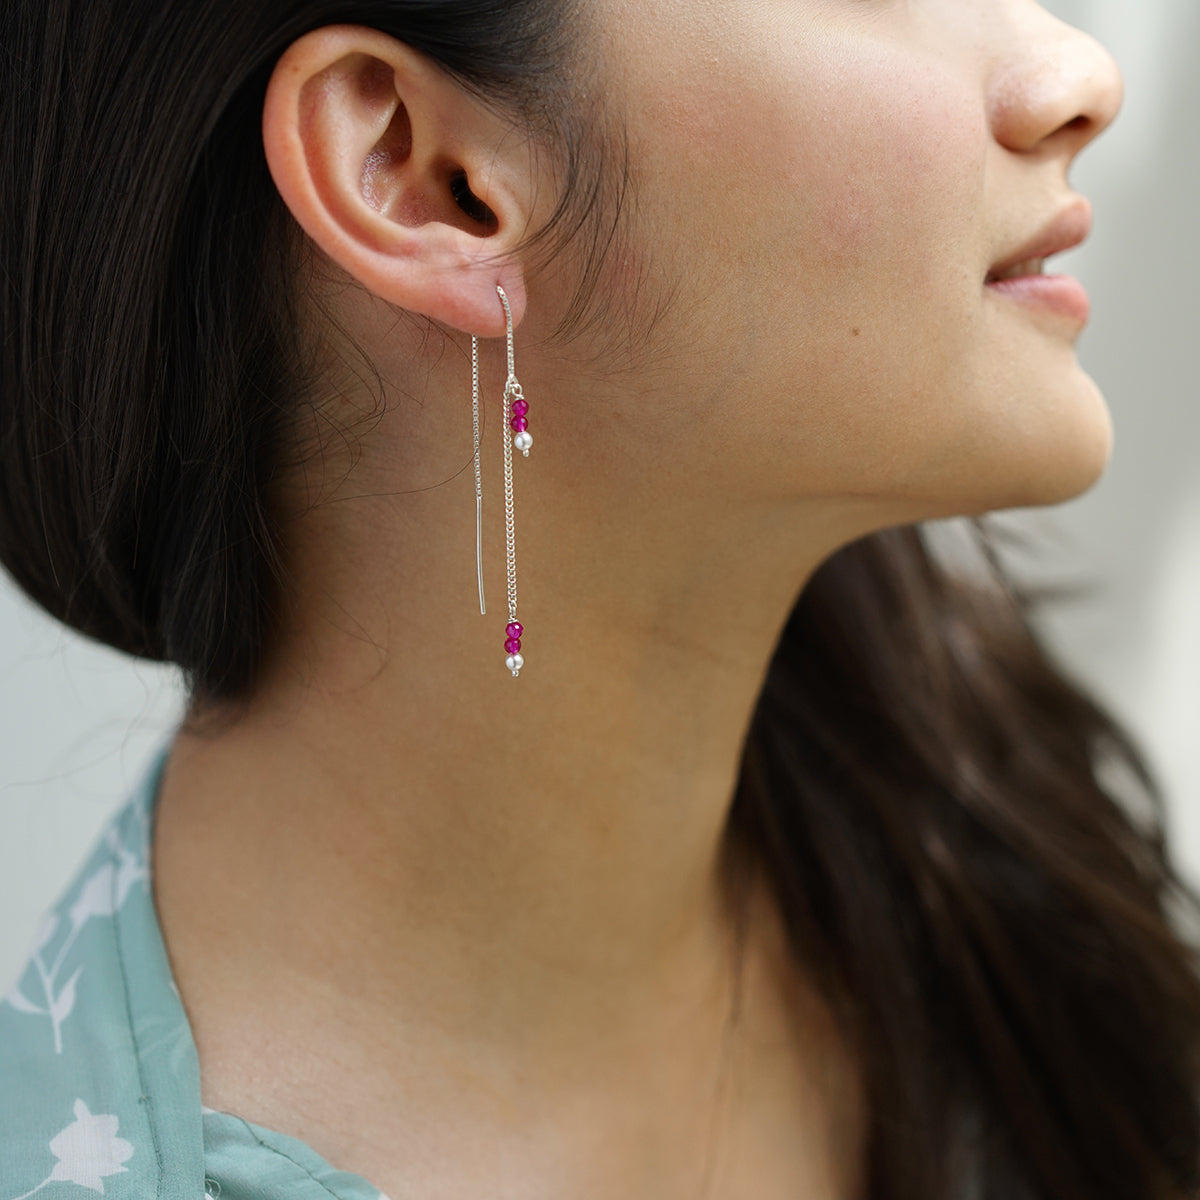 Sui Dhaaga Pearl Ruby Earrings